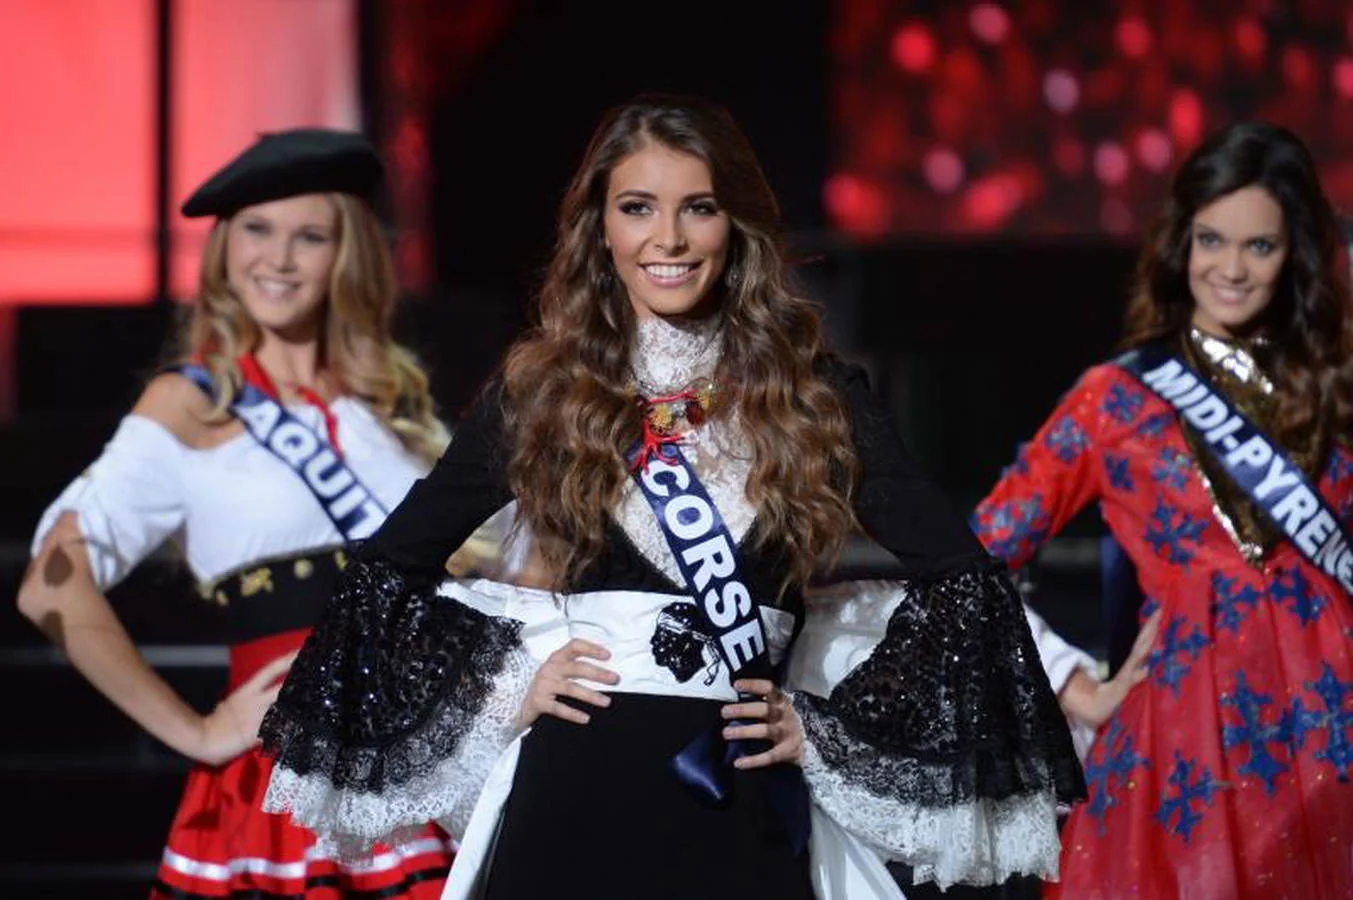 Maëva Coucke, estudiante de derecho de 23 años y representante del Nord-Pas-de-Calais, ha sido elegida este fin de semana Miss Francia 2018 en reemplazo de la guyanesa Guyanaise Alicia Aylies